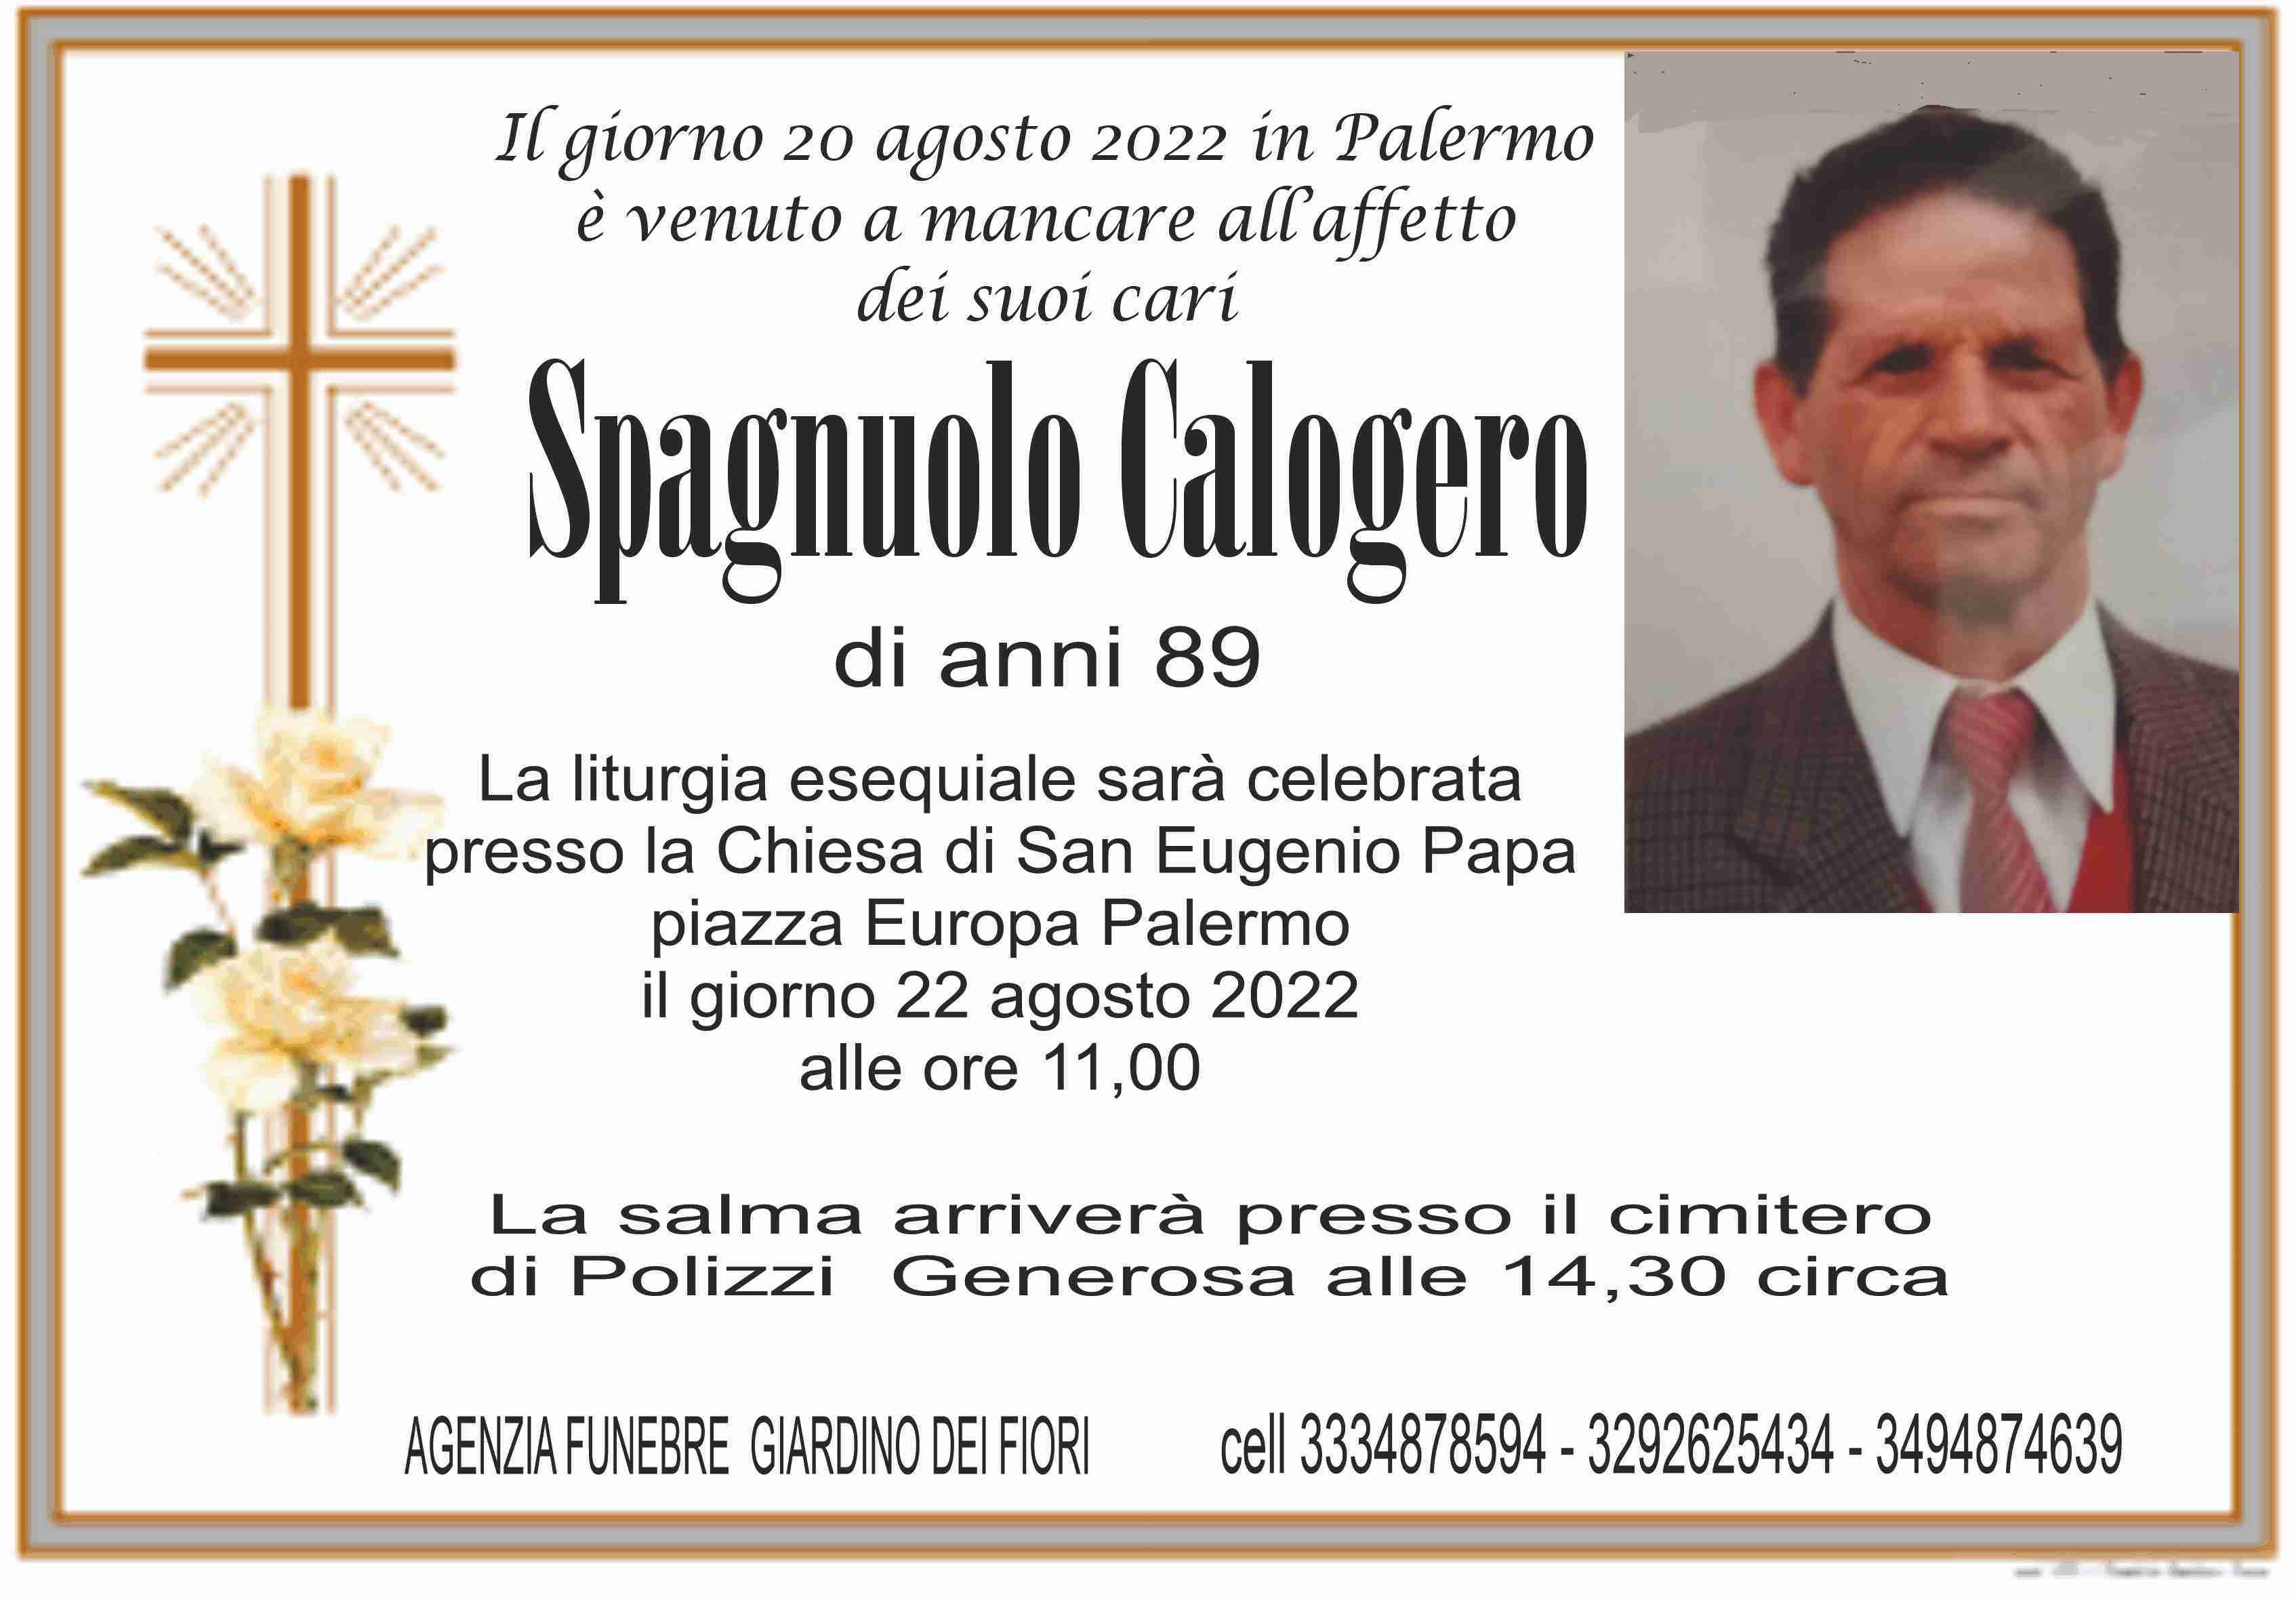 Calogero Spagnuolo